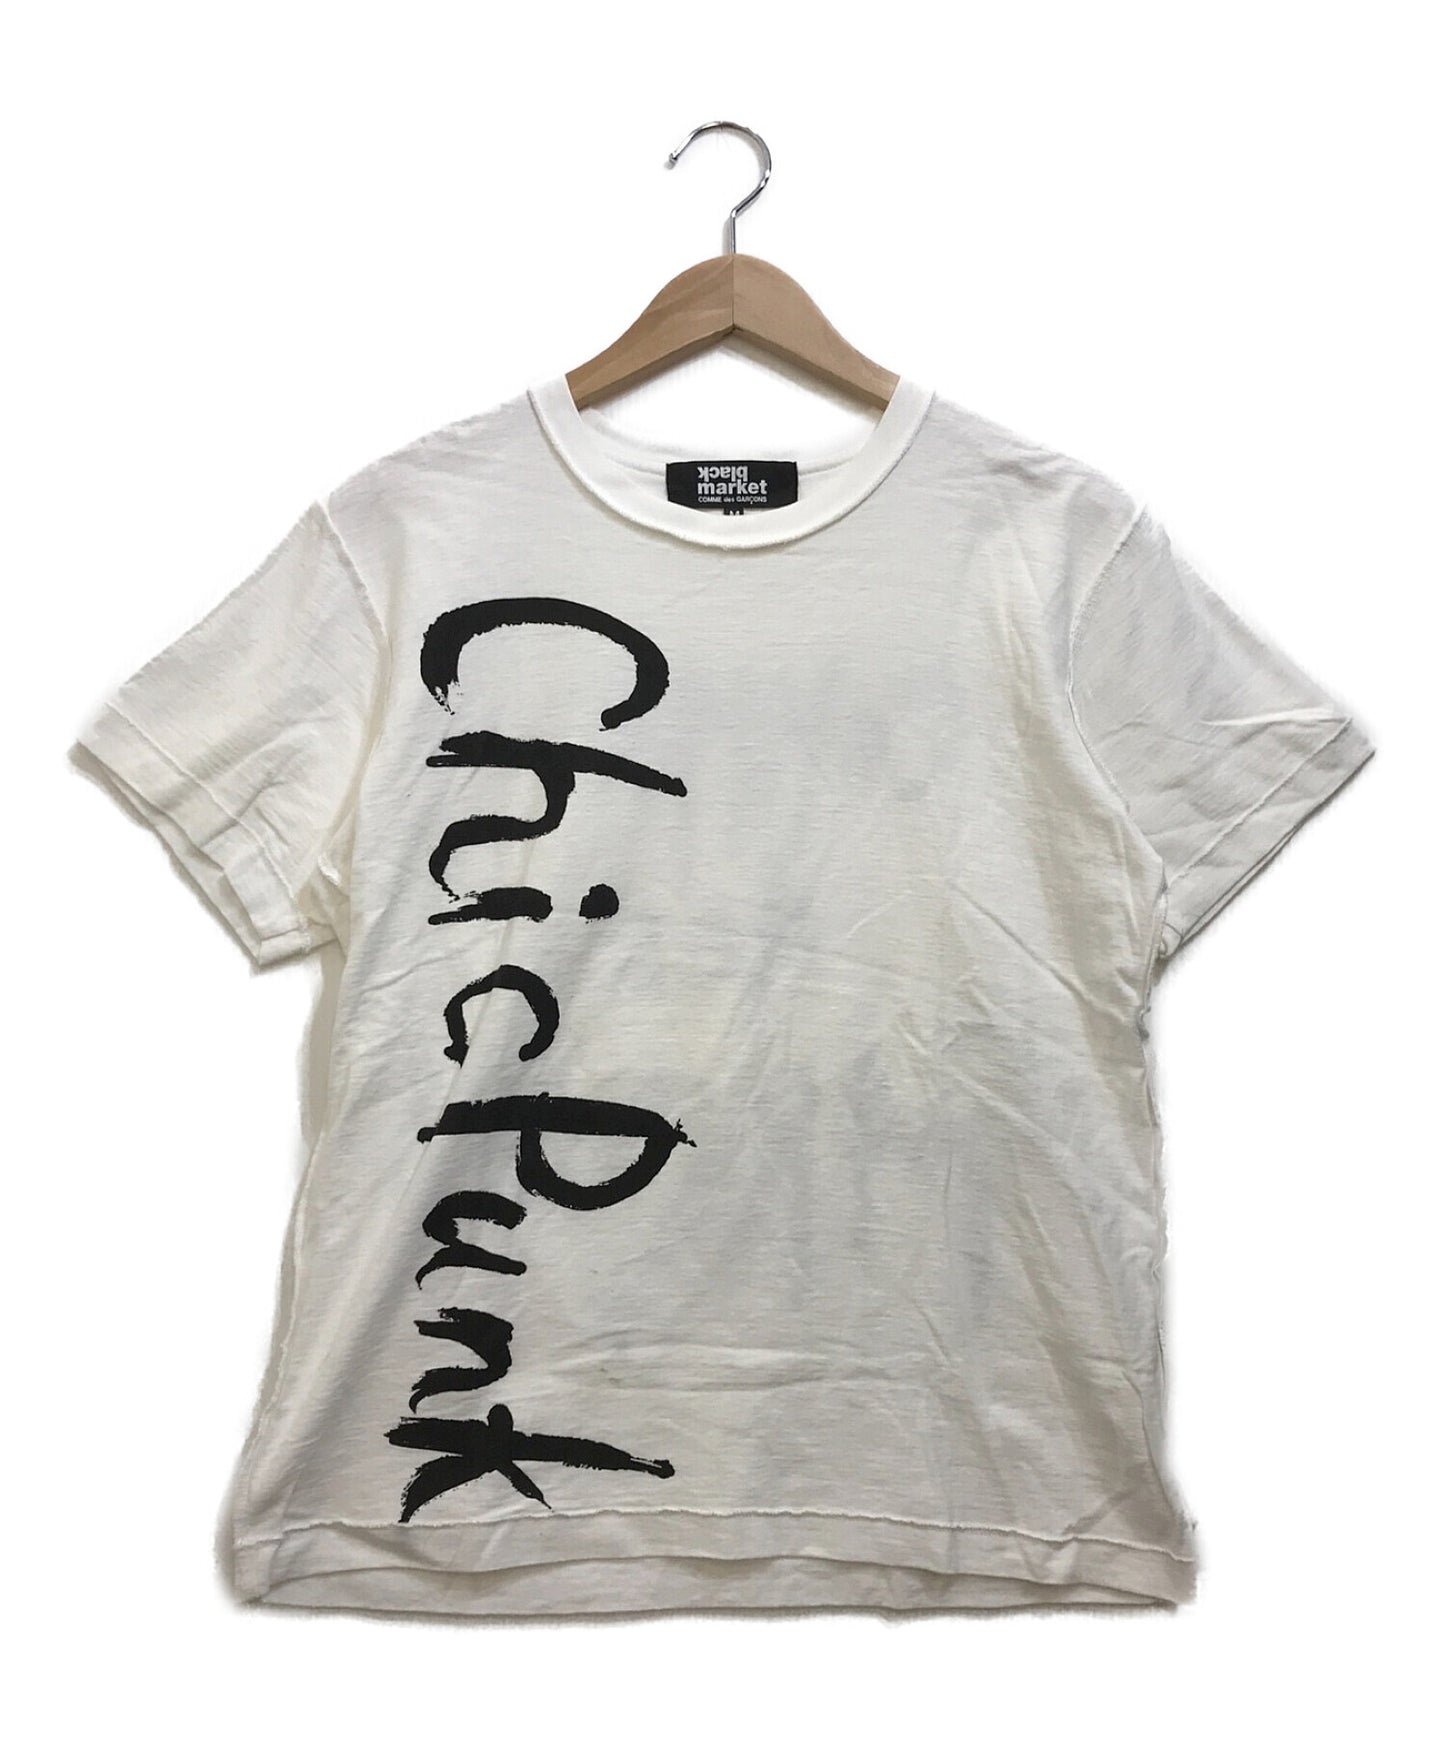 Comme des garcons blackmarket เสื้อยืด Punk Chic Printed (Chic Punk) OS-T007